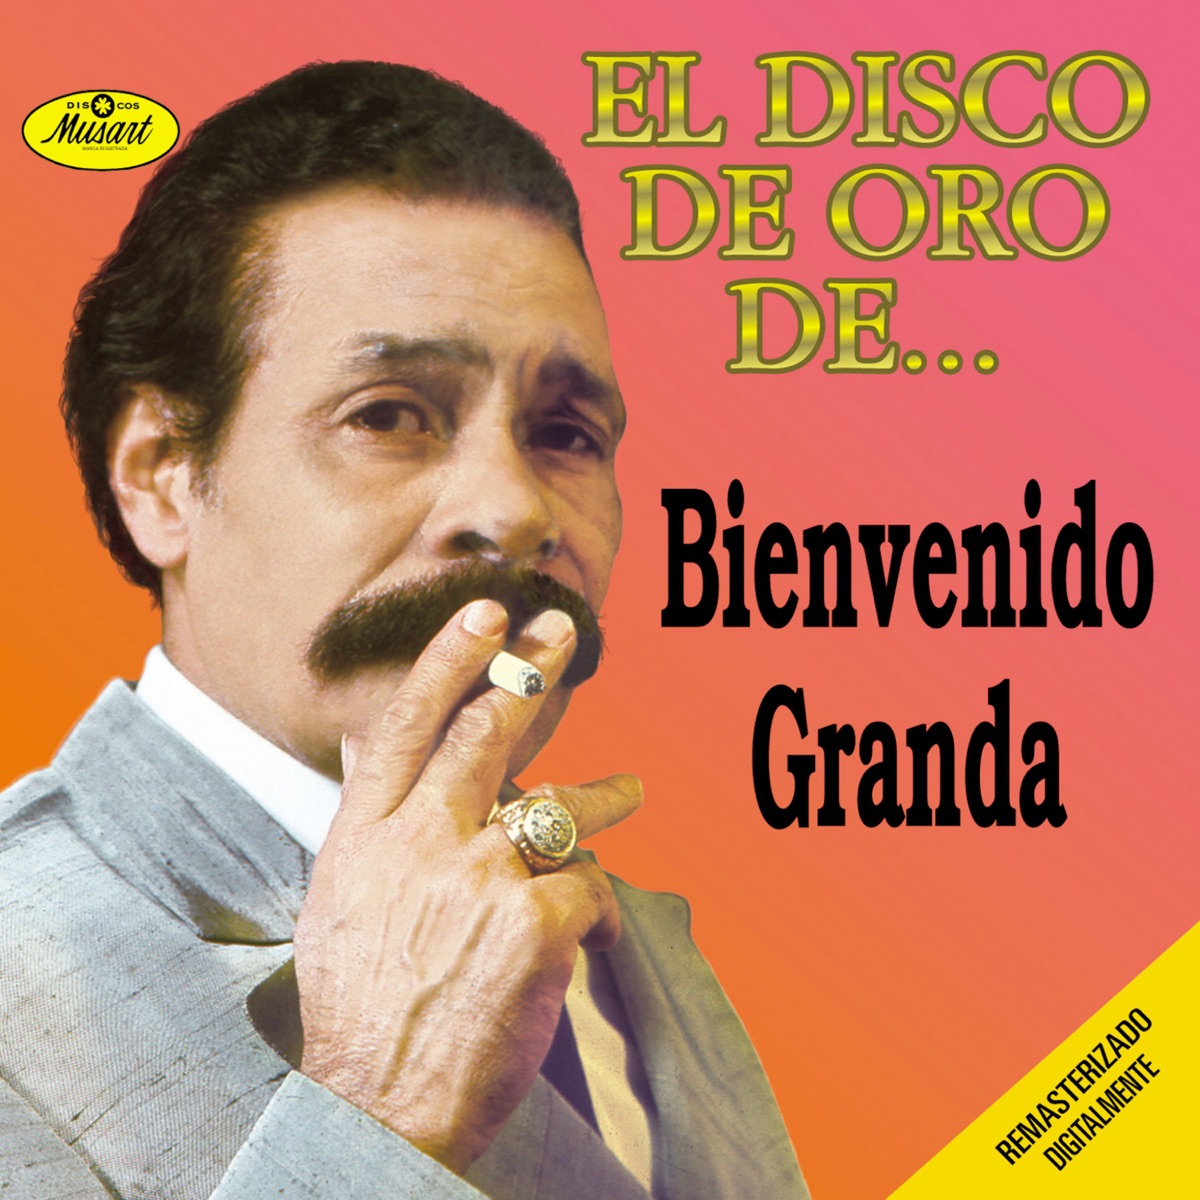 Grandes Éxitos De Bienvenido Granda (feat. La Sonora Matancera) - Album by Bienvenido  Granda - Apple Music